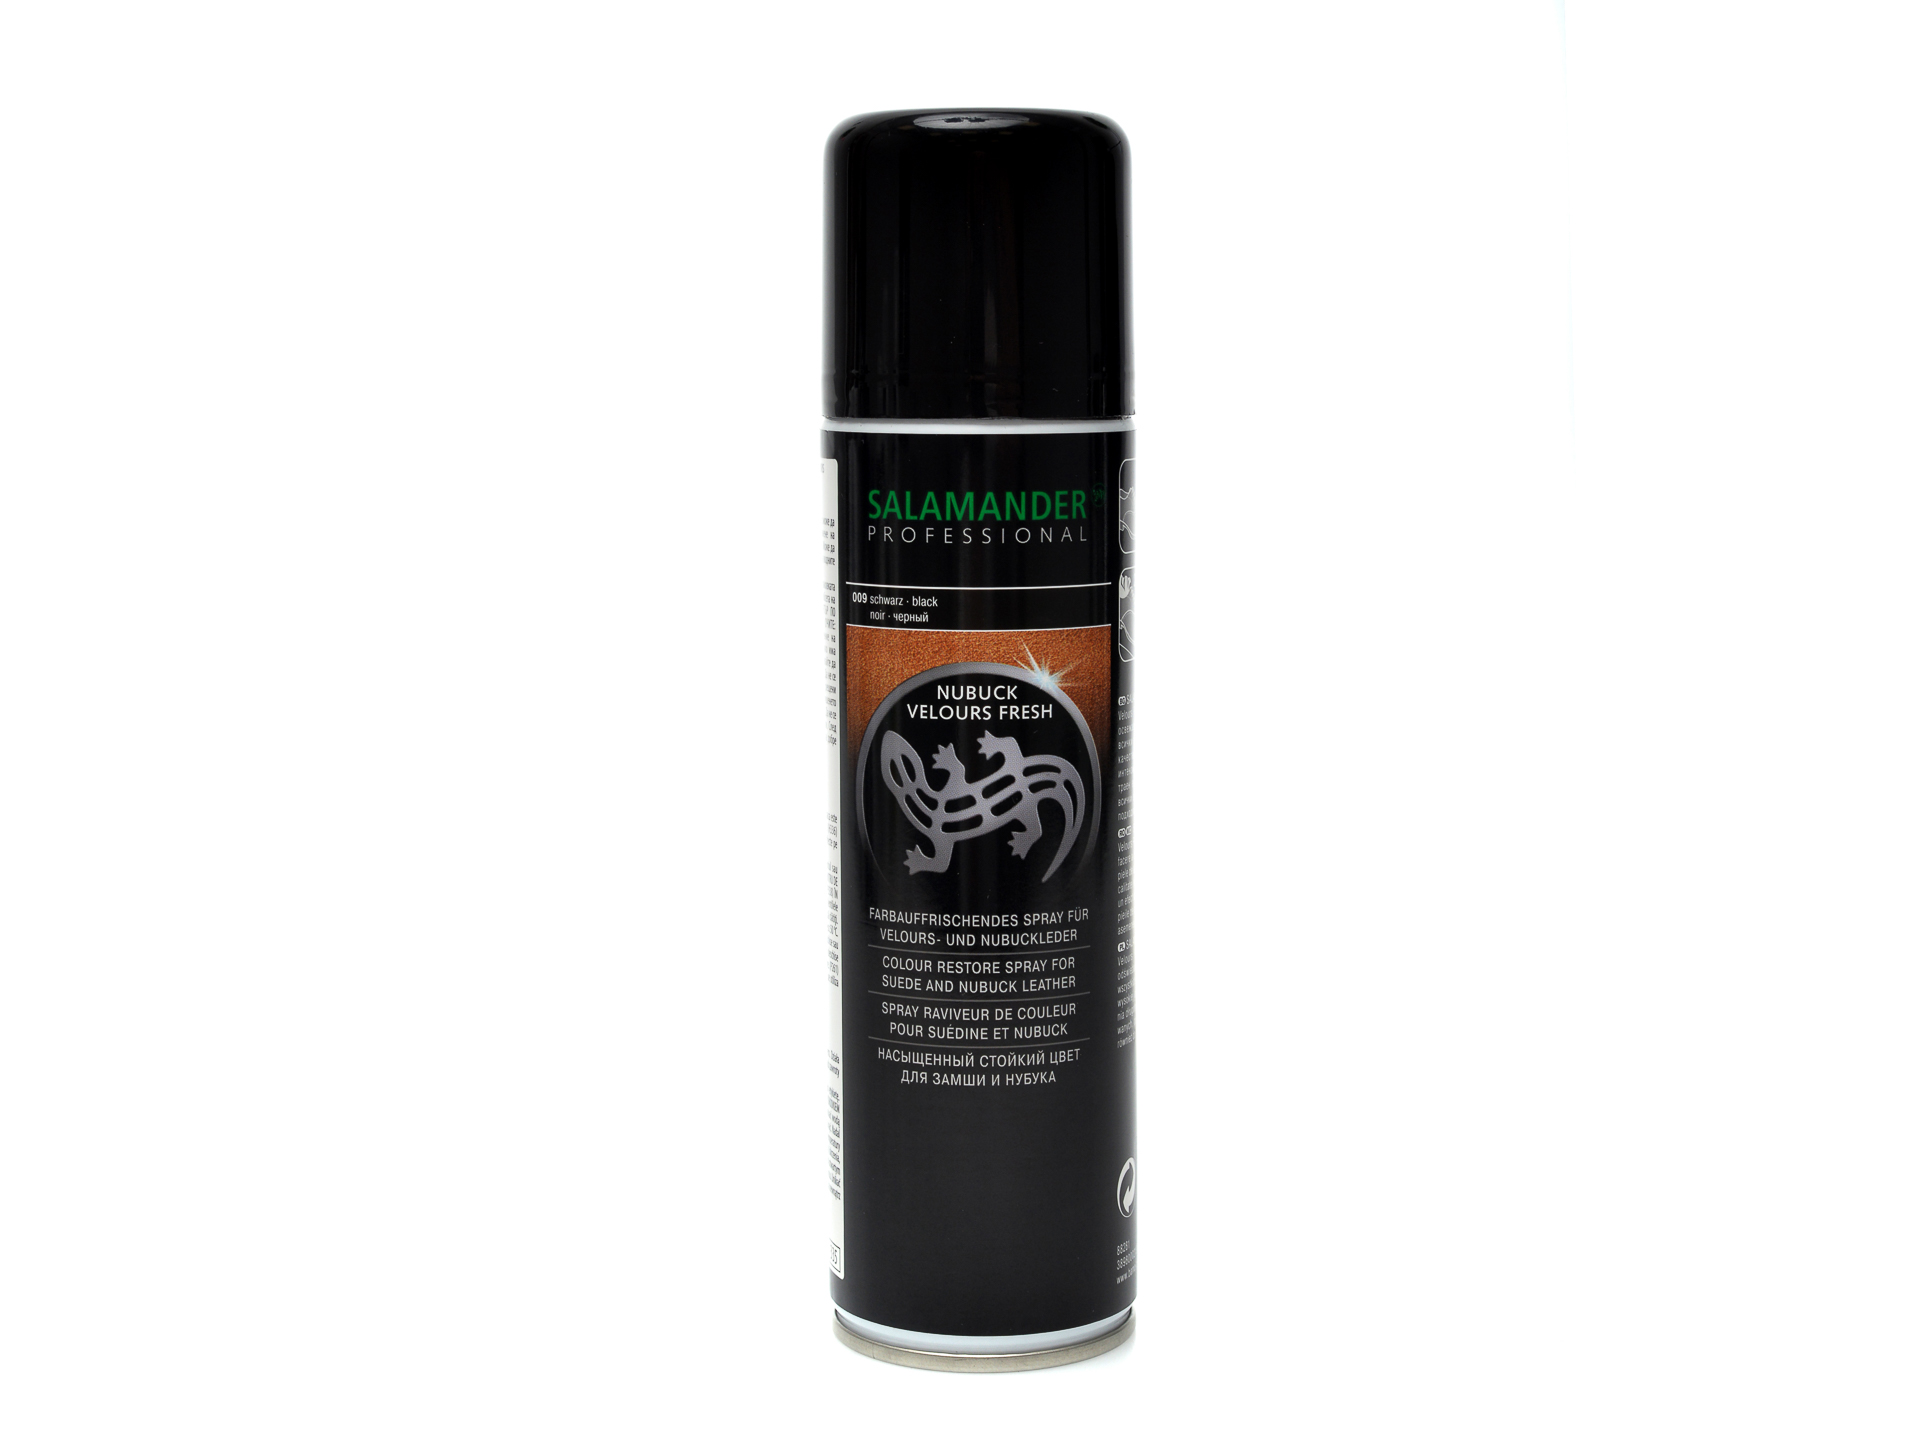 PR Spray de culoare neagra, Salamander /accesorii/produse